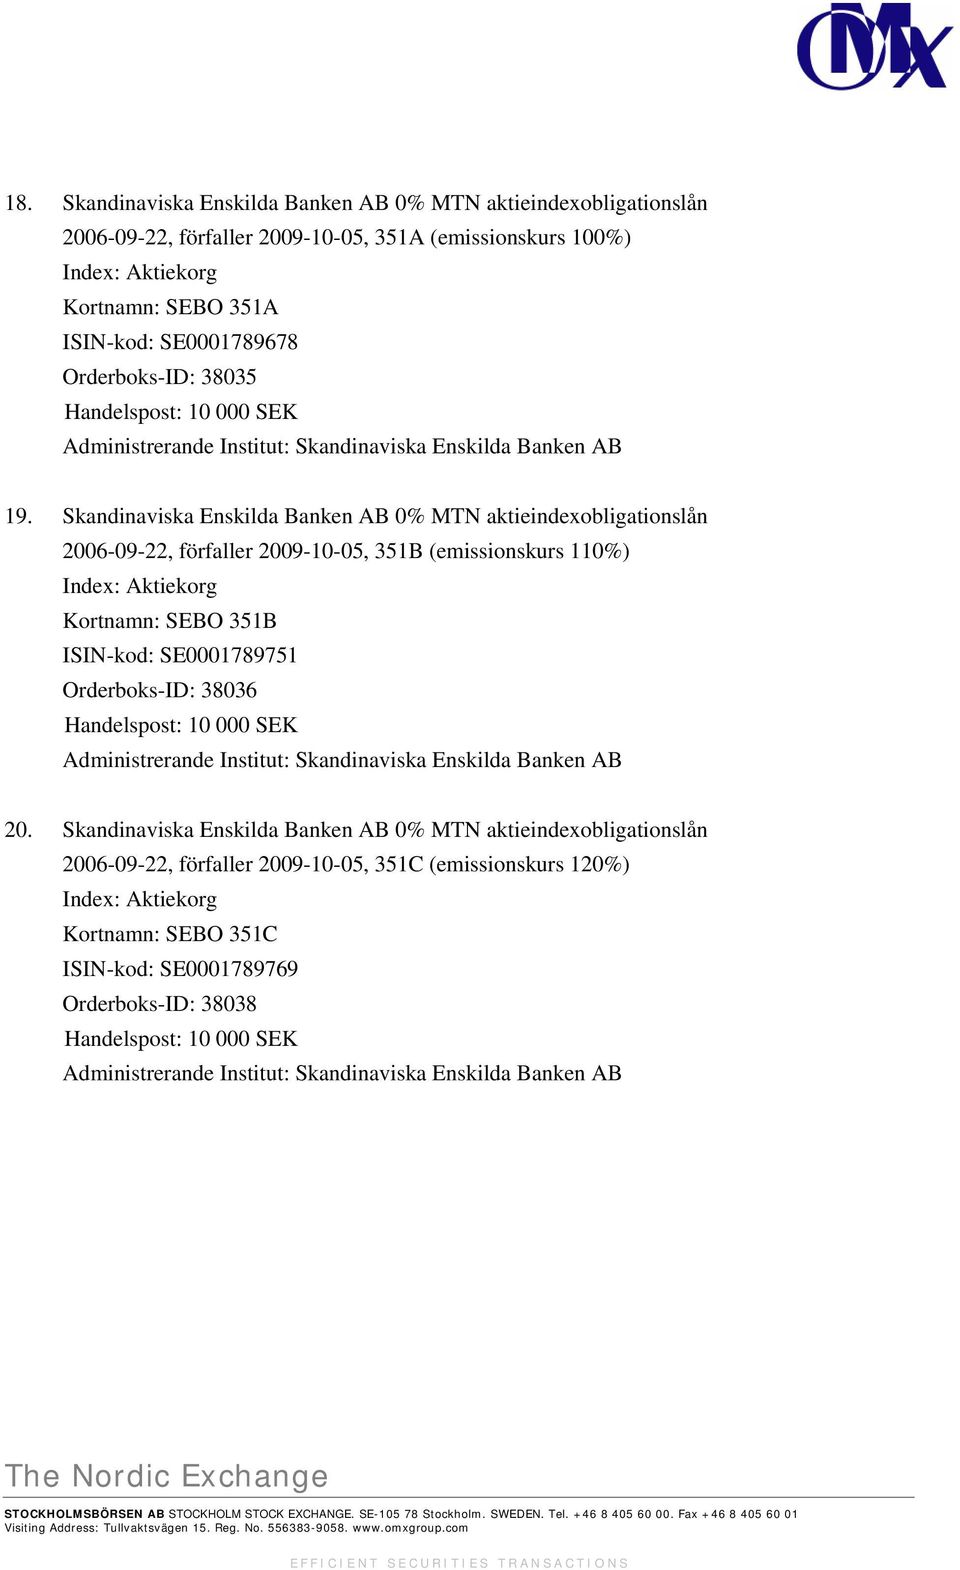 Skandinaviska Enskilda Banken AB 0% MTN aktieindexobligationslån 2006-09-22, förfaller 2009-10-05, 351B (emissionskurs 110%) Index: Aktiekorg Kortnamn: SEBO